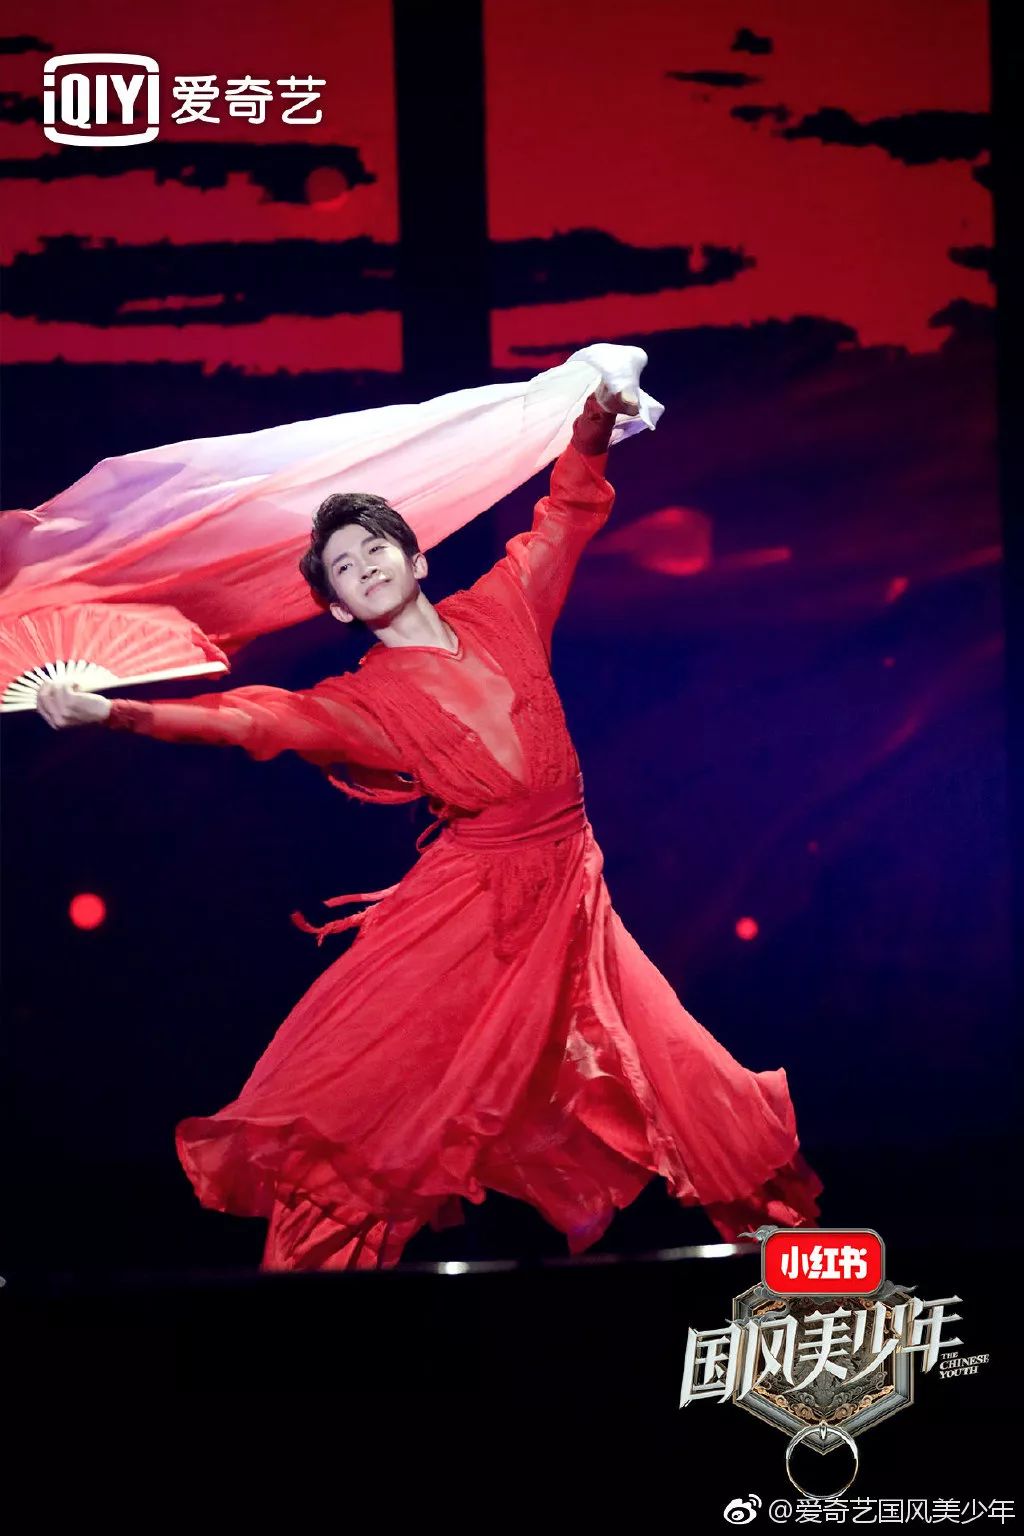 到三位召集人交口称赞的红衣少年刘宇,美轮美奂的扇舞表演从唤起观众"